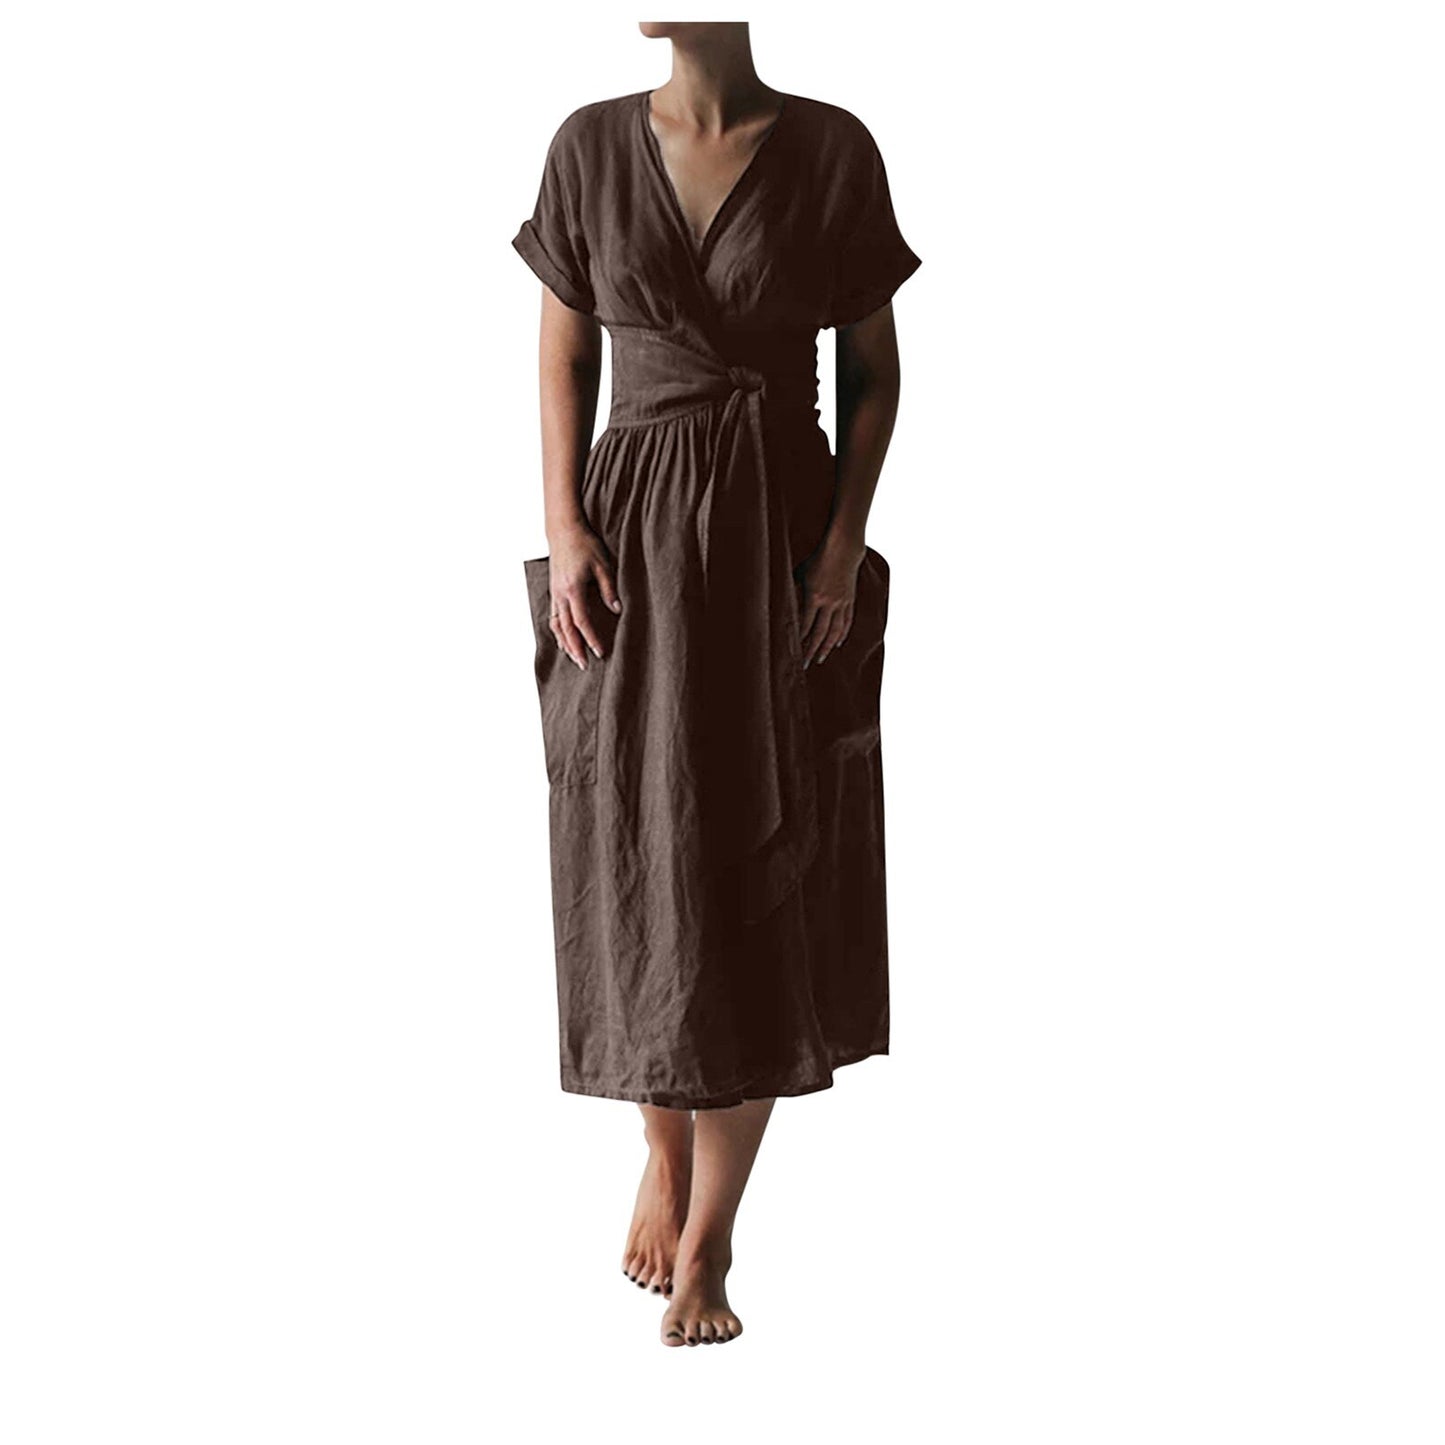 Ladies dress casual short-sleeved solid color V-neck cotton and linen lace-up slit hem strap pocket comfortable dress